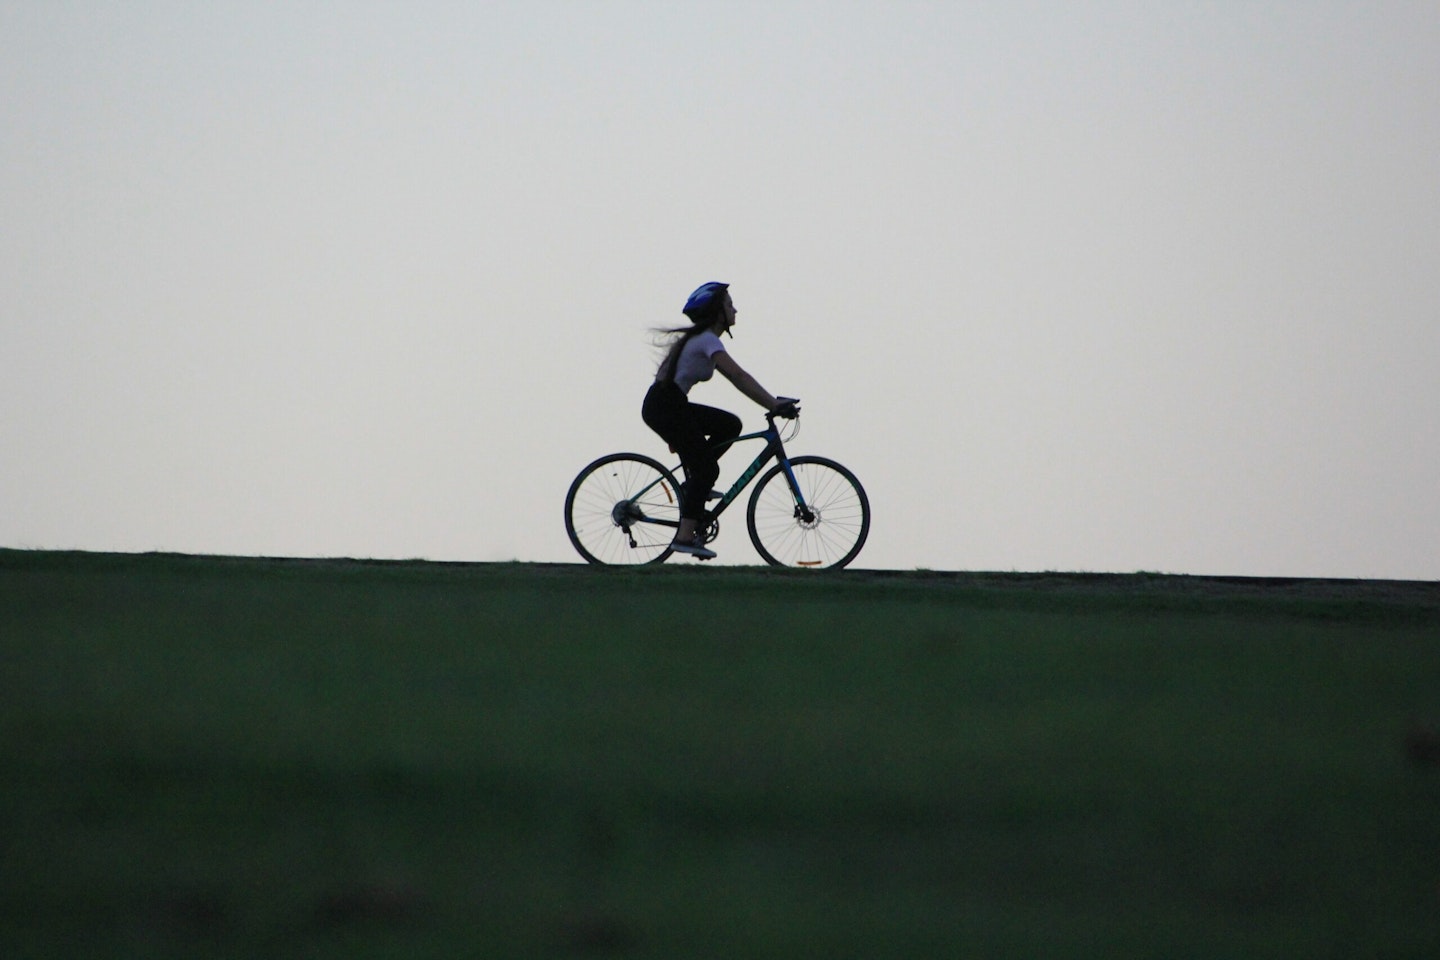 Fængsling Mindful handikap Godt for sundhed, klima og trængsel: Cyklen er transportmidlernes  schweizerkniv | Verdens Bedste Nyheder